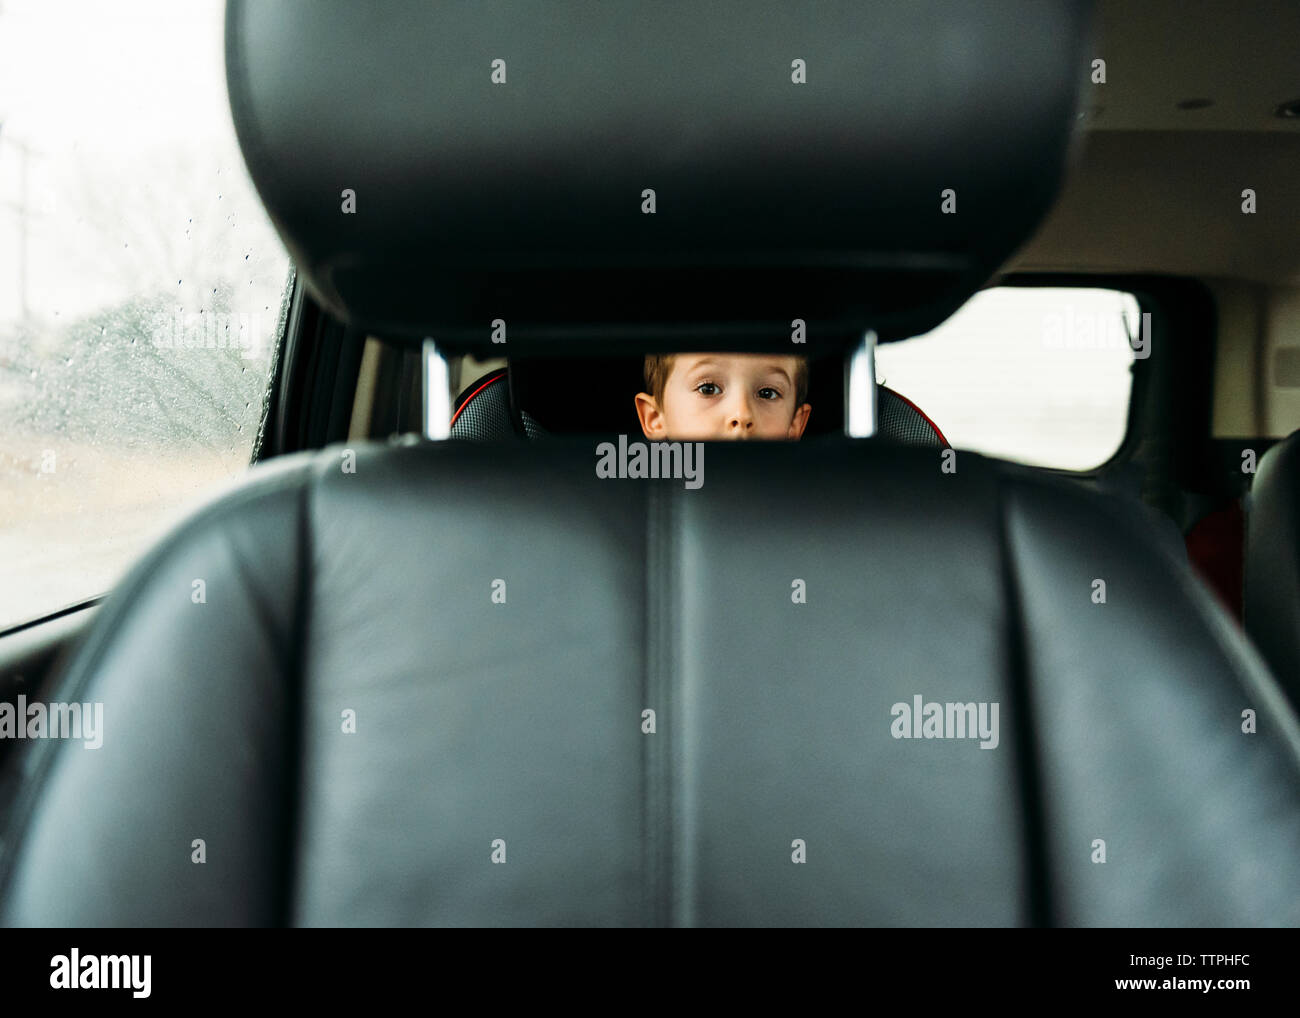 Retrato de niño mirando a través del asiento del vehículo. Foto de stock